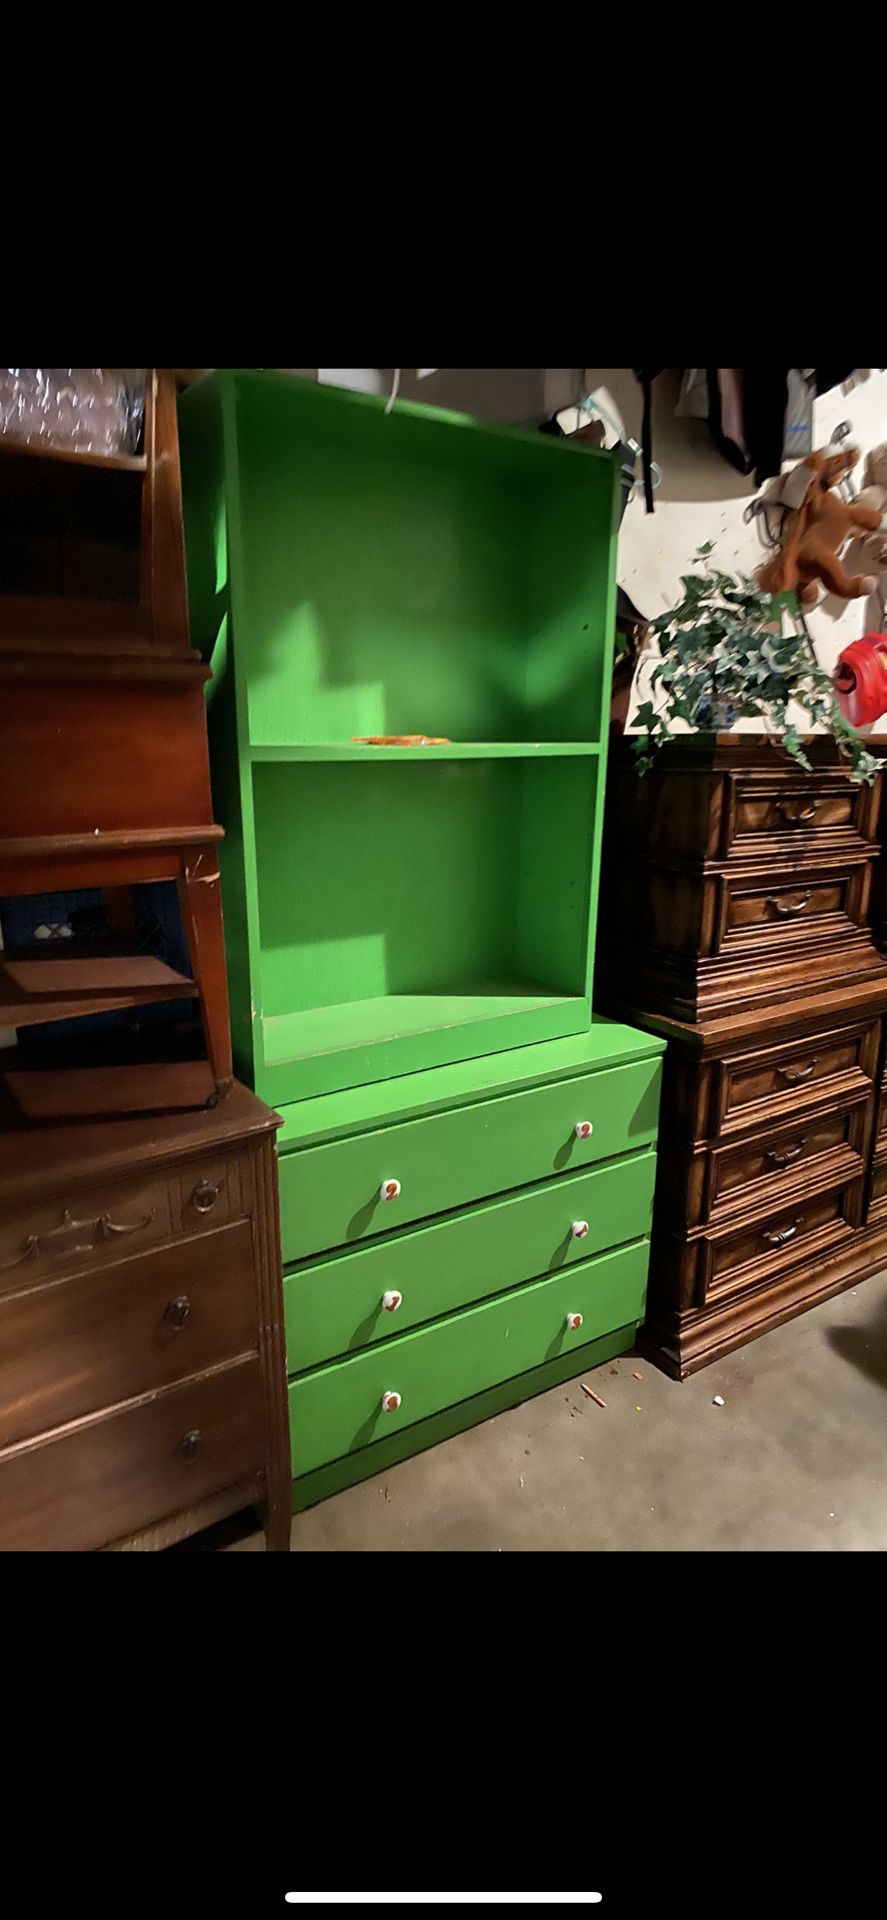 Green dresser and shelf